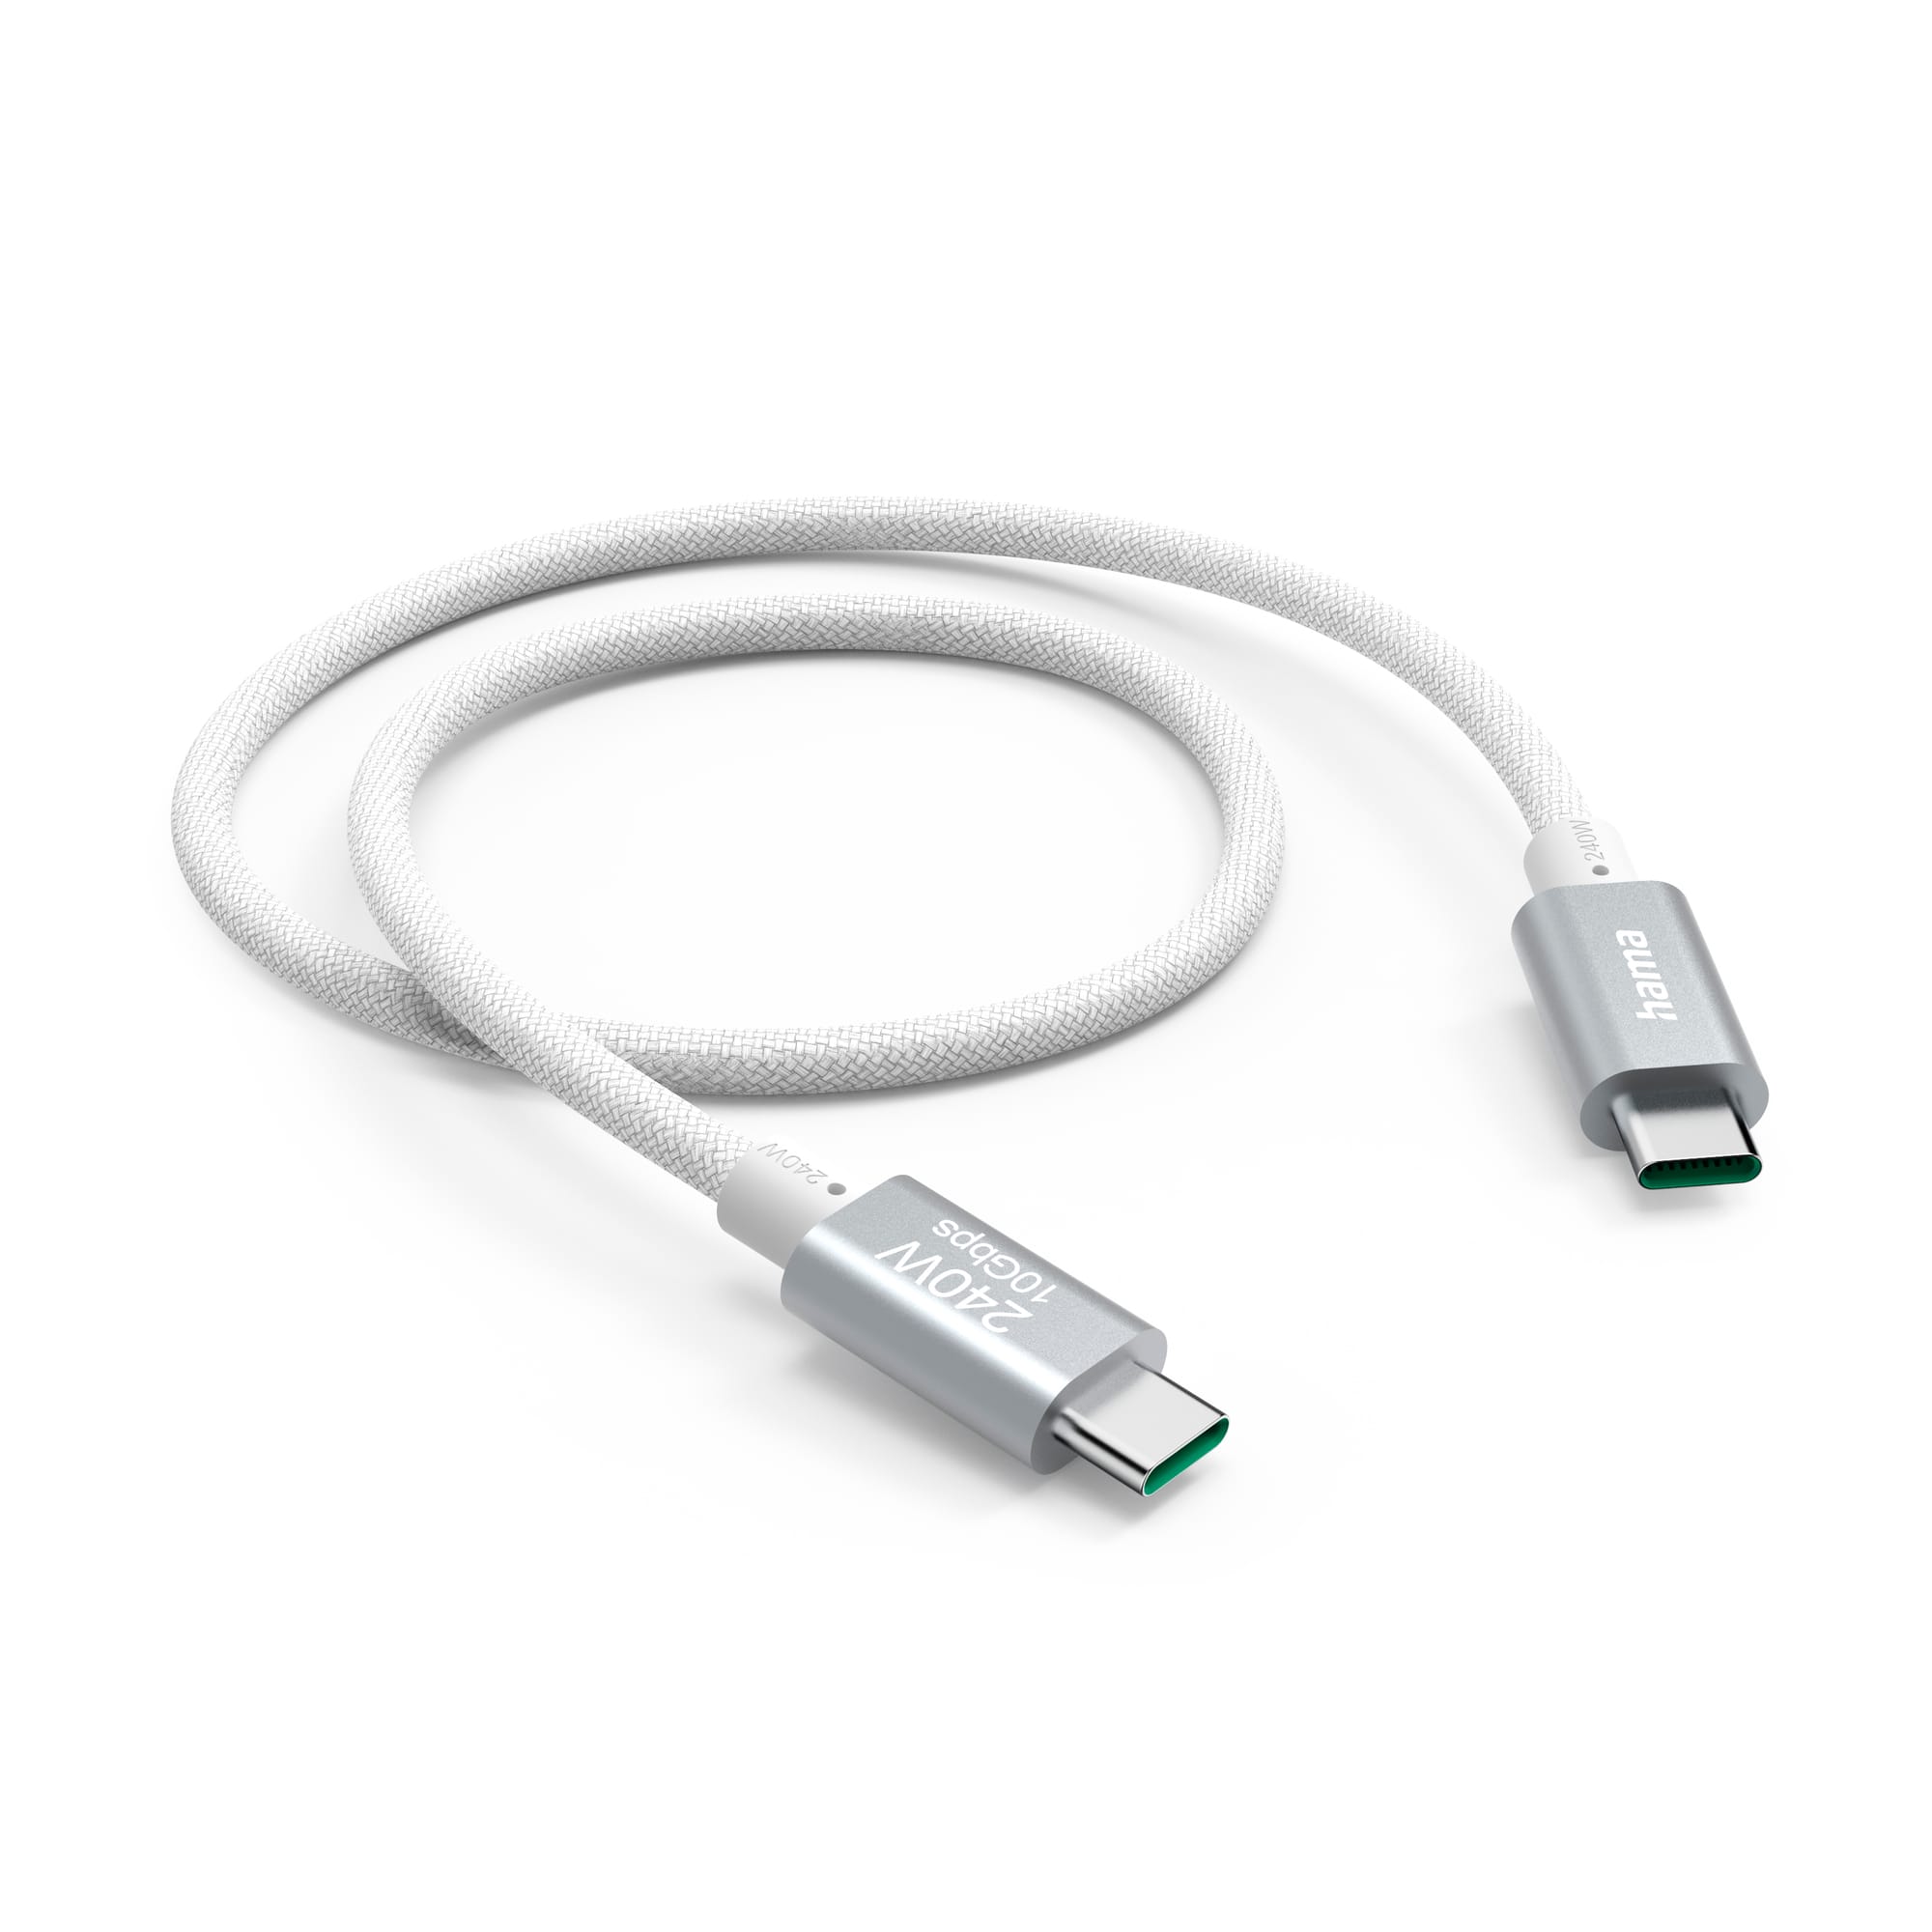 Hama lança novo cabo USB C que alia rapidez de carregamento e transferência de dados